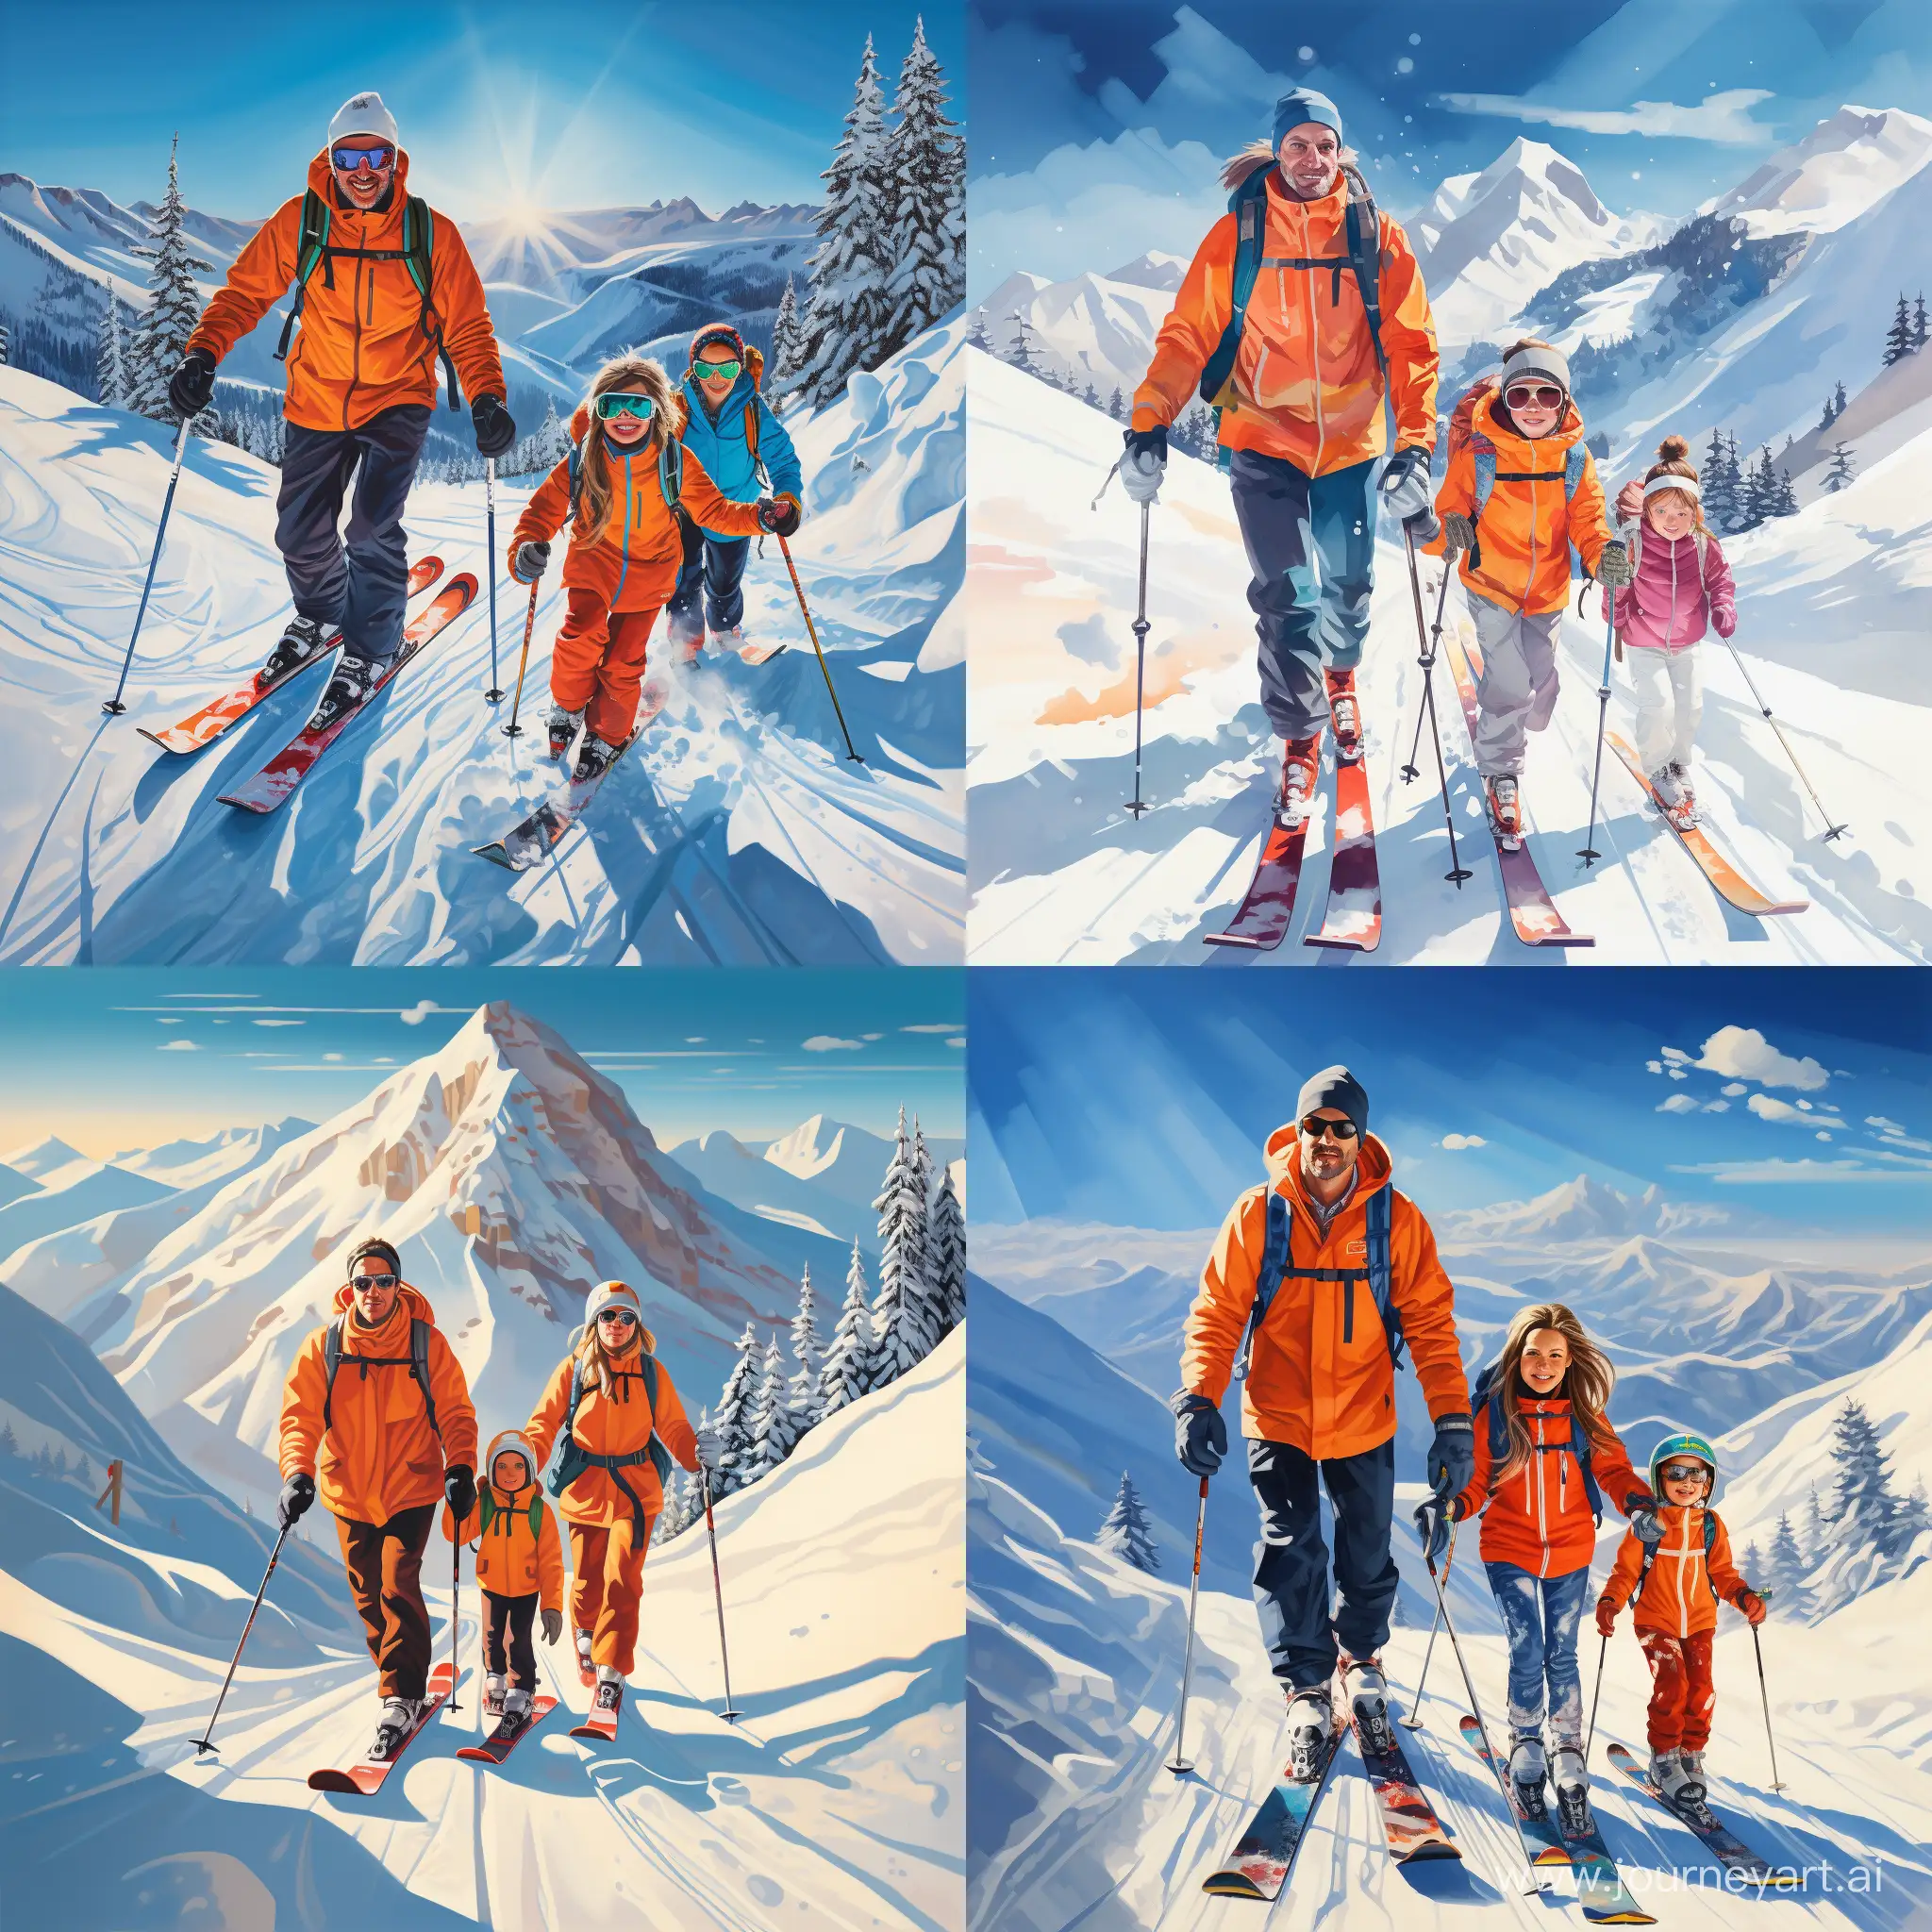 Joyful-Family-Skiing-Adventure-on-the-Mountain